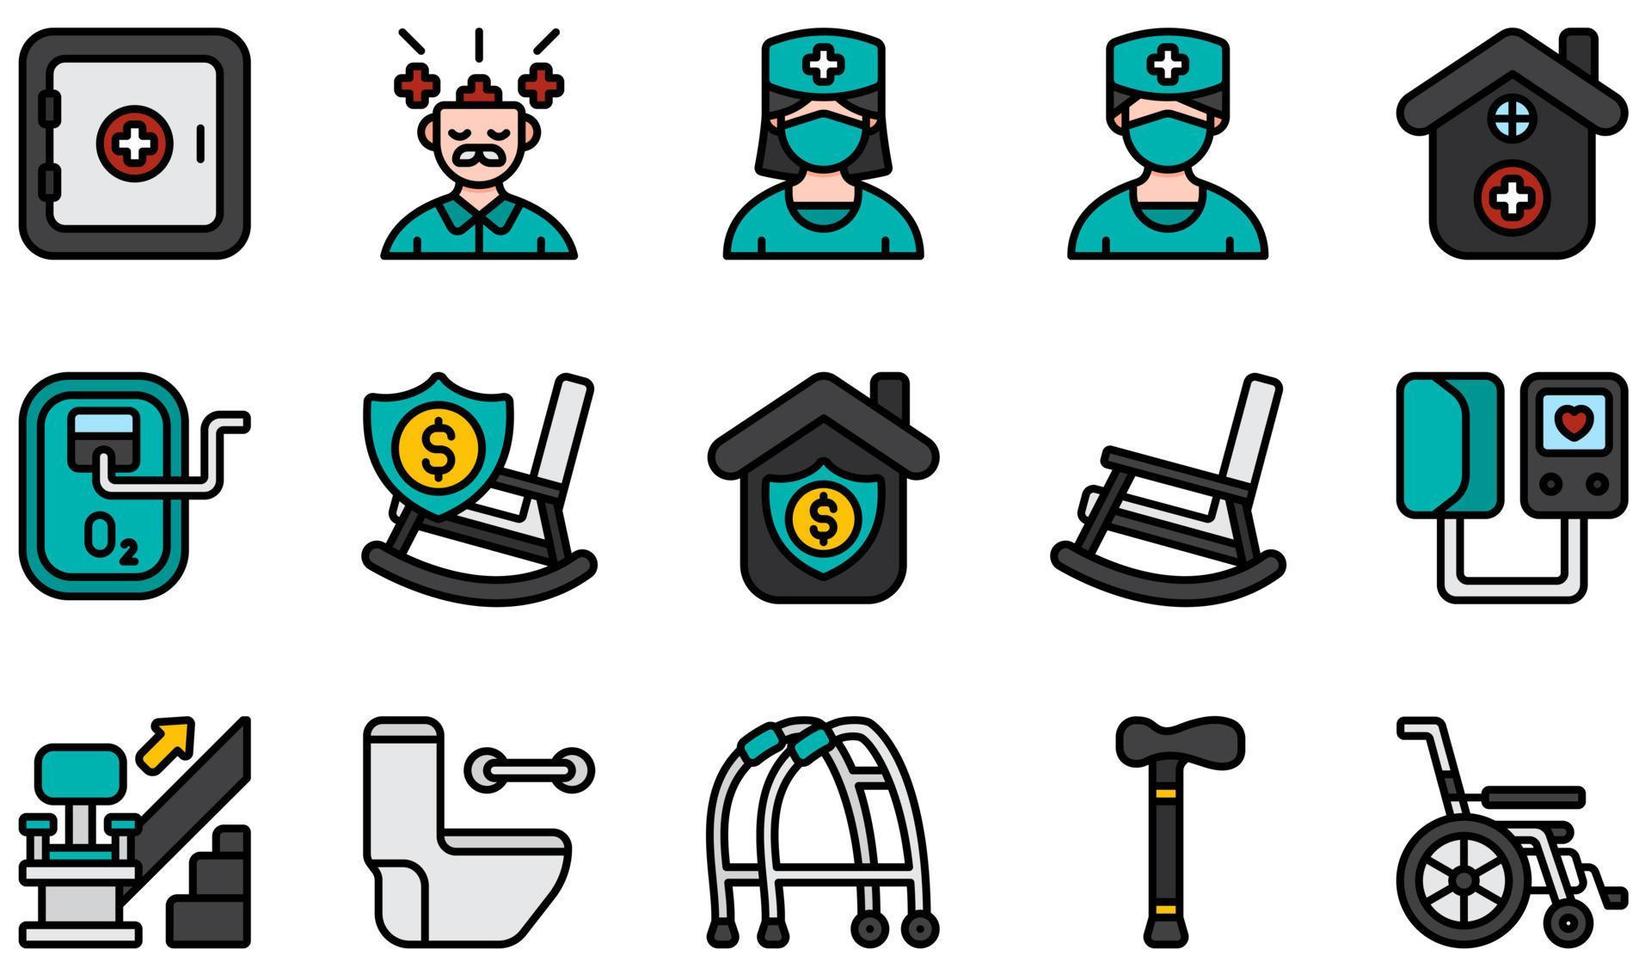 uppsättning vektor ikoner relaterade till vårdhem. innehåller sådana ikoner som mental hälsa, sjuksköterska, äldreboende, pension, gungstol, trappa med mera.